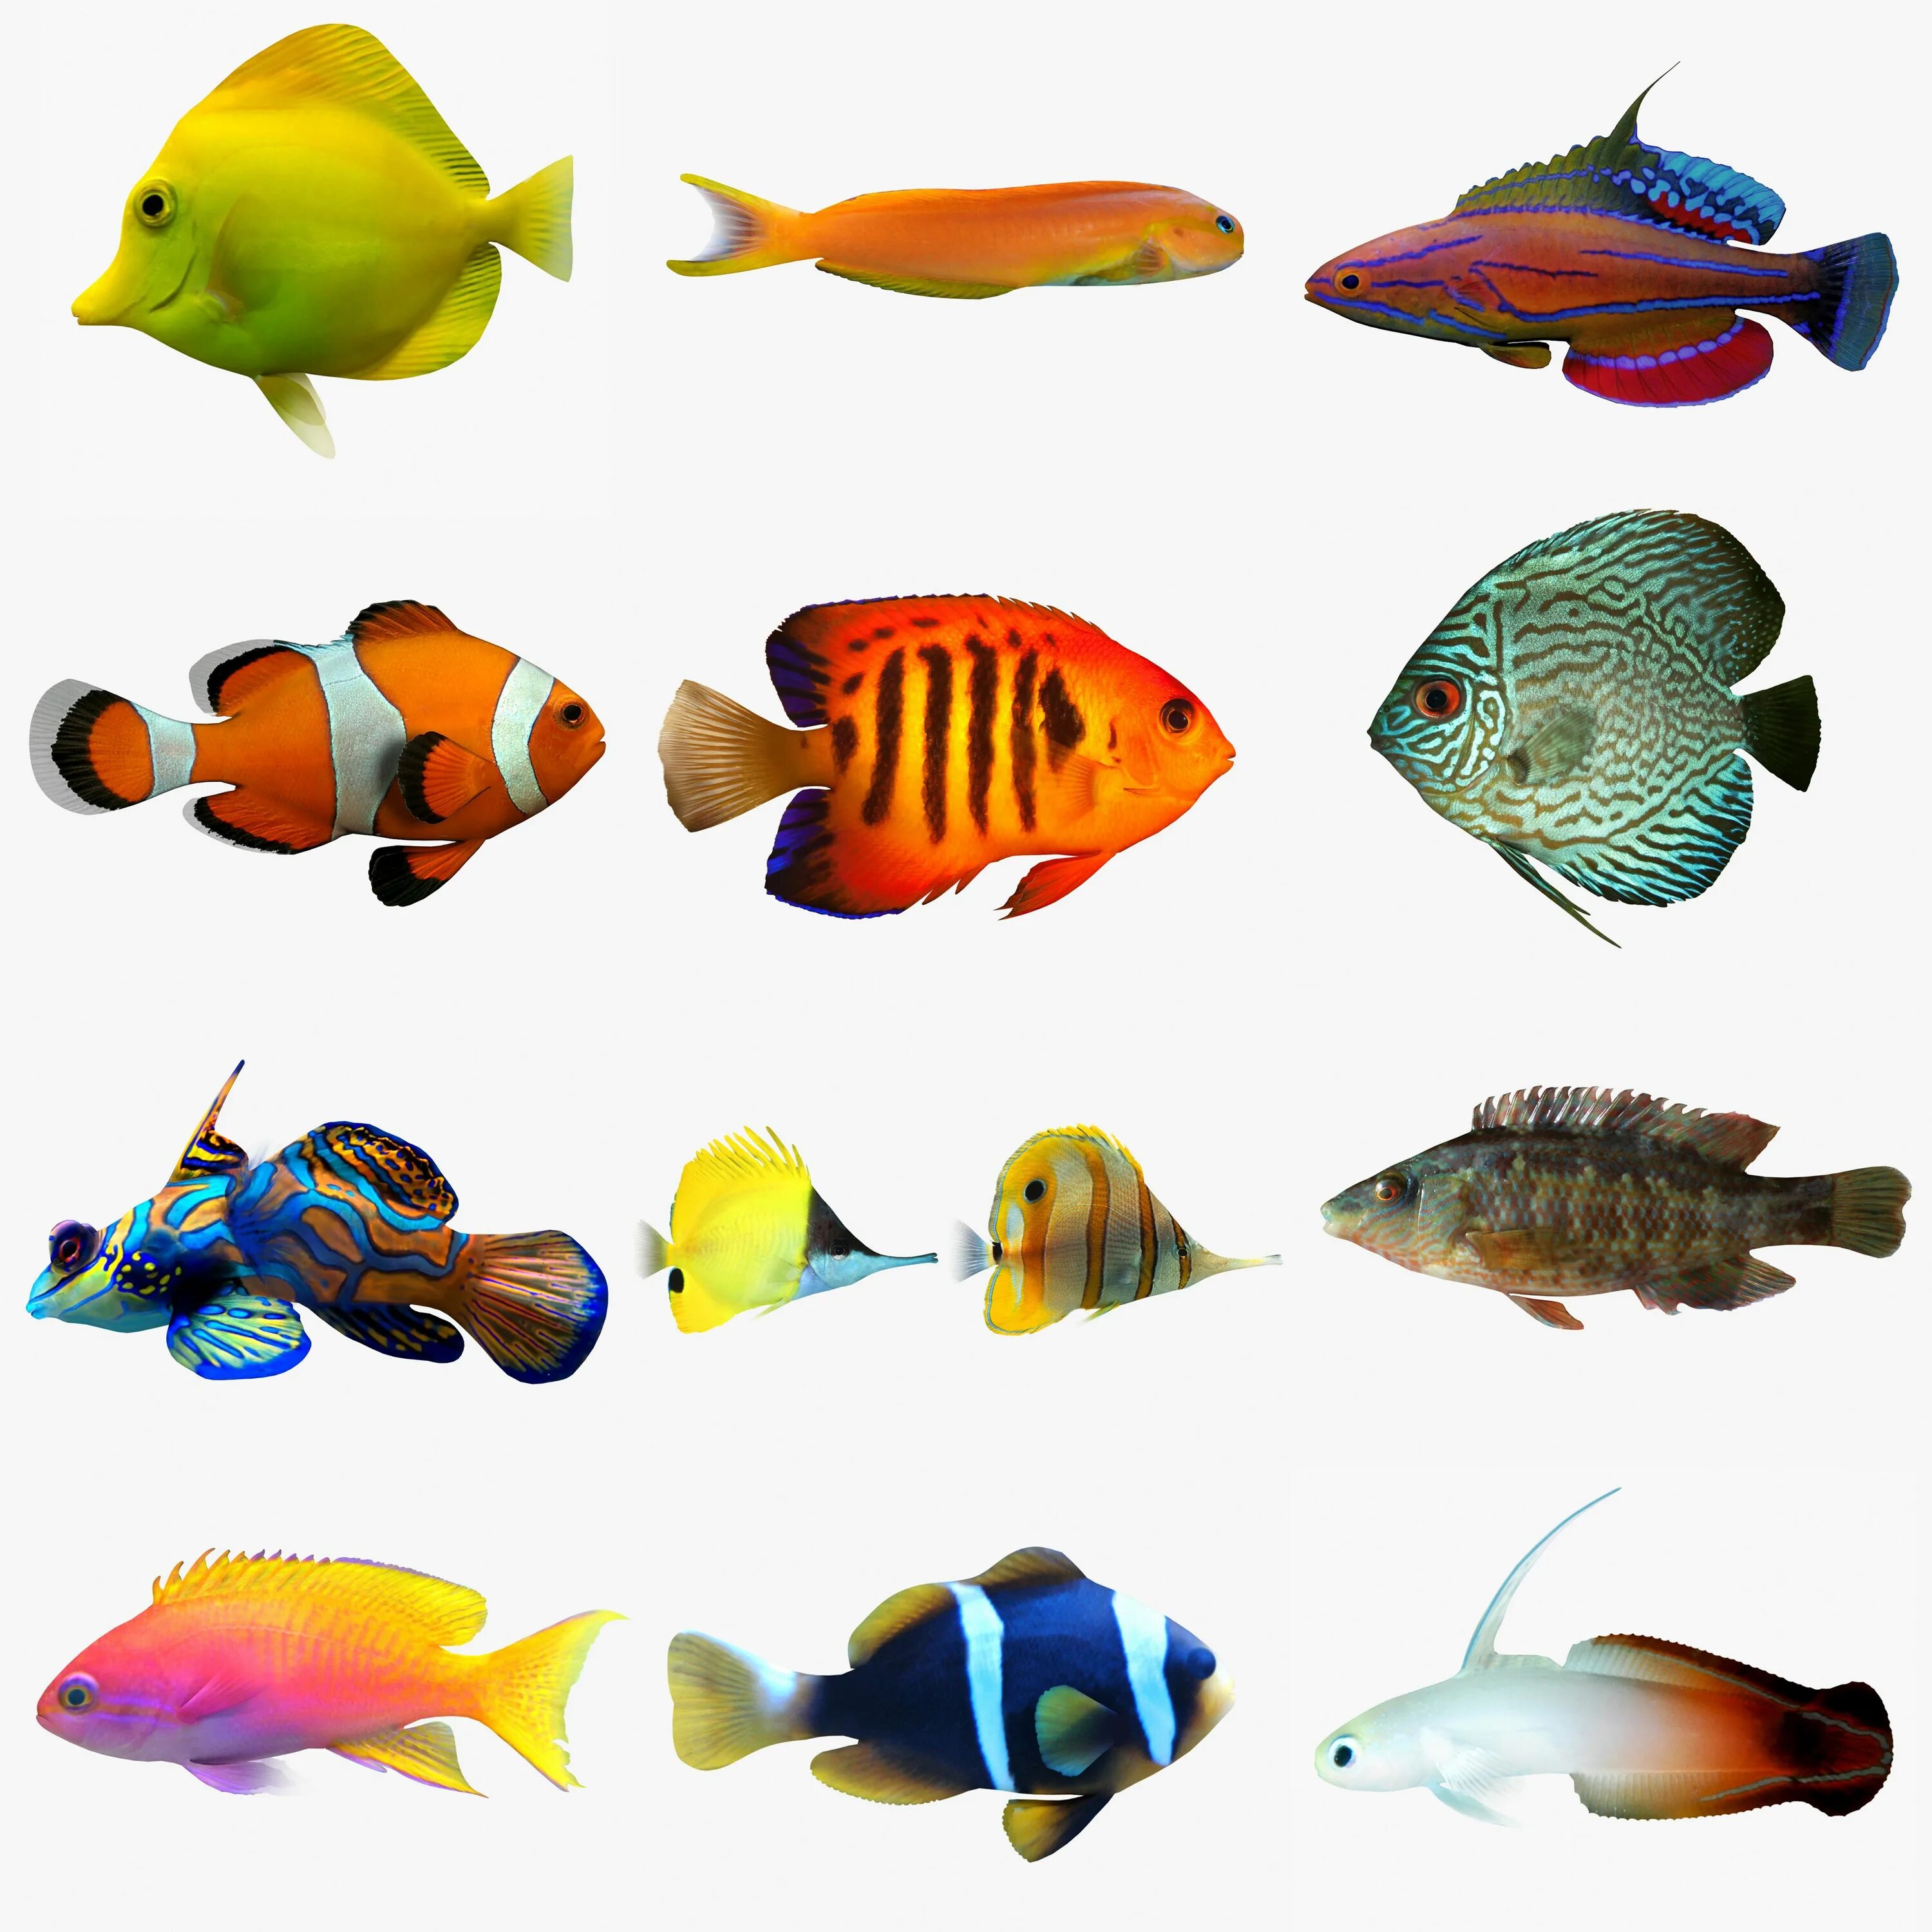 Верхоплавающие аквариумные рыбки. Гирики рыбки аквариумные. Моторо рыбка аквариумная. Цветные рыбы. Как называются рыбки в аквариуме